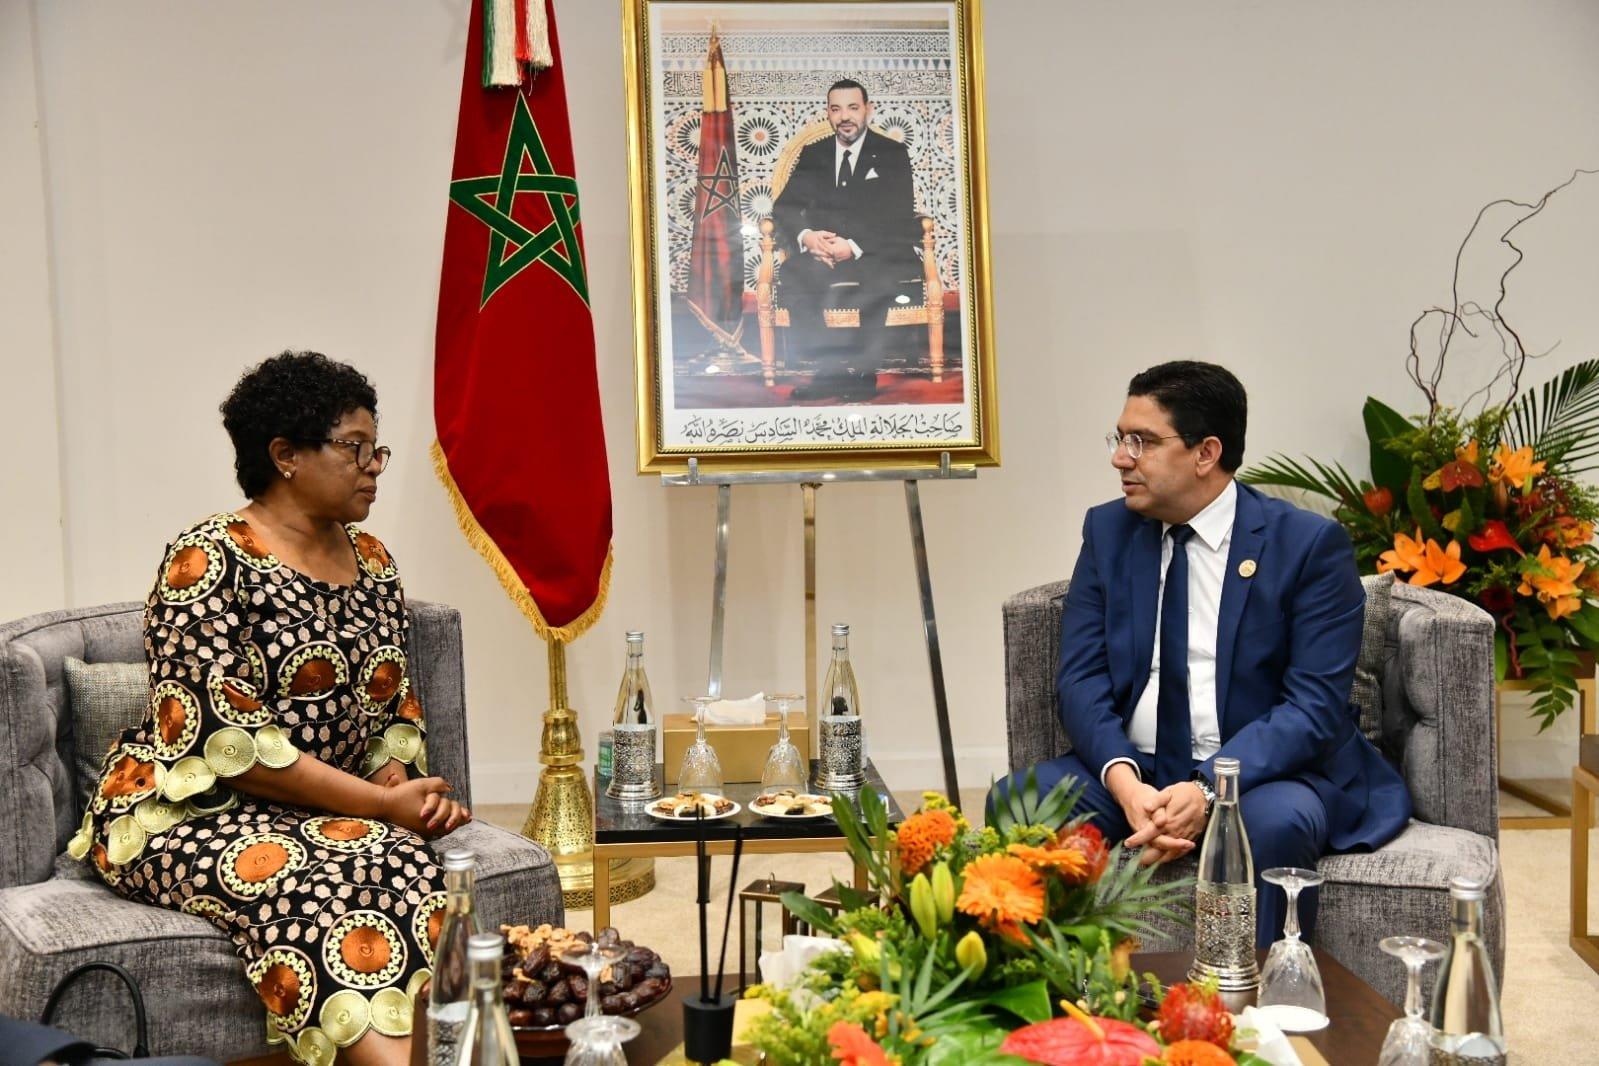 Le Malawi réitère son soutien "indéfectible" à l'intégrité territoriale du Maroc